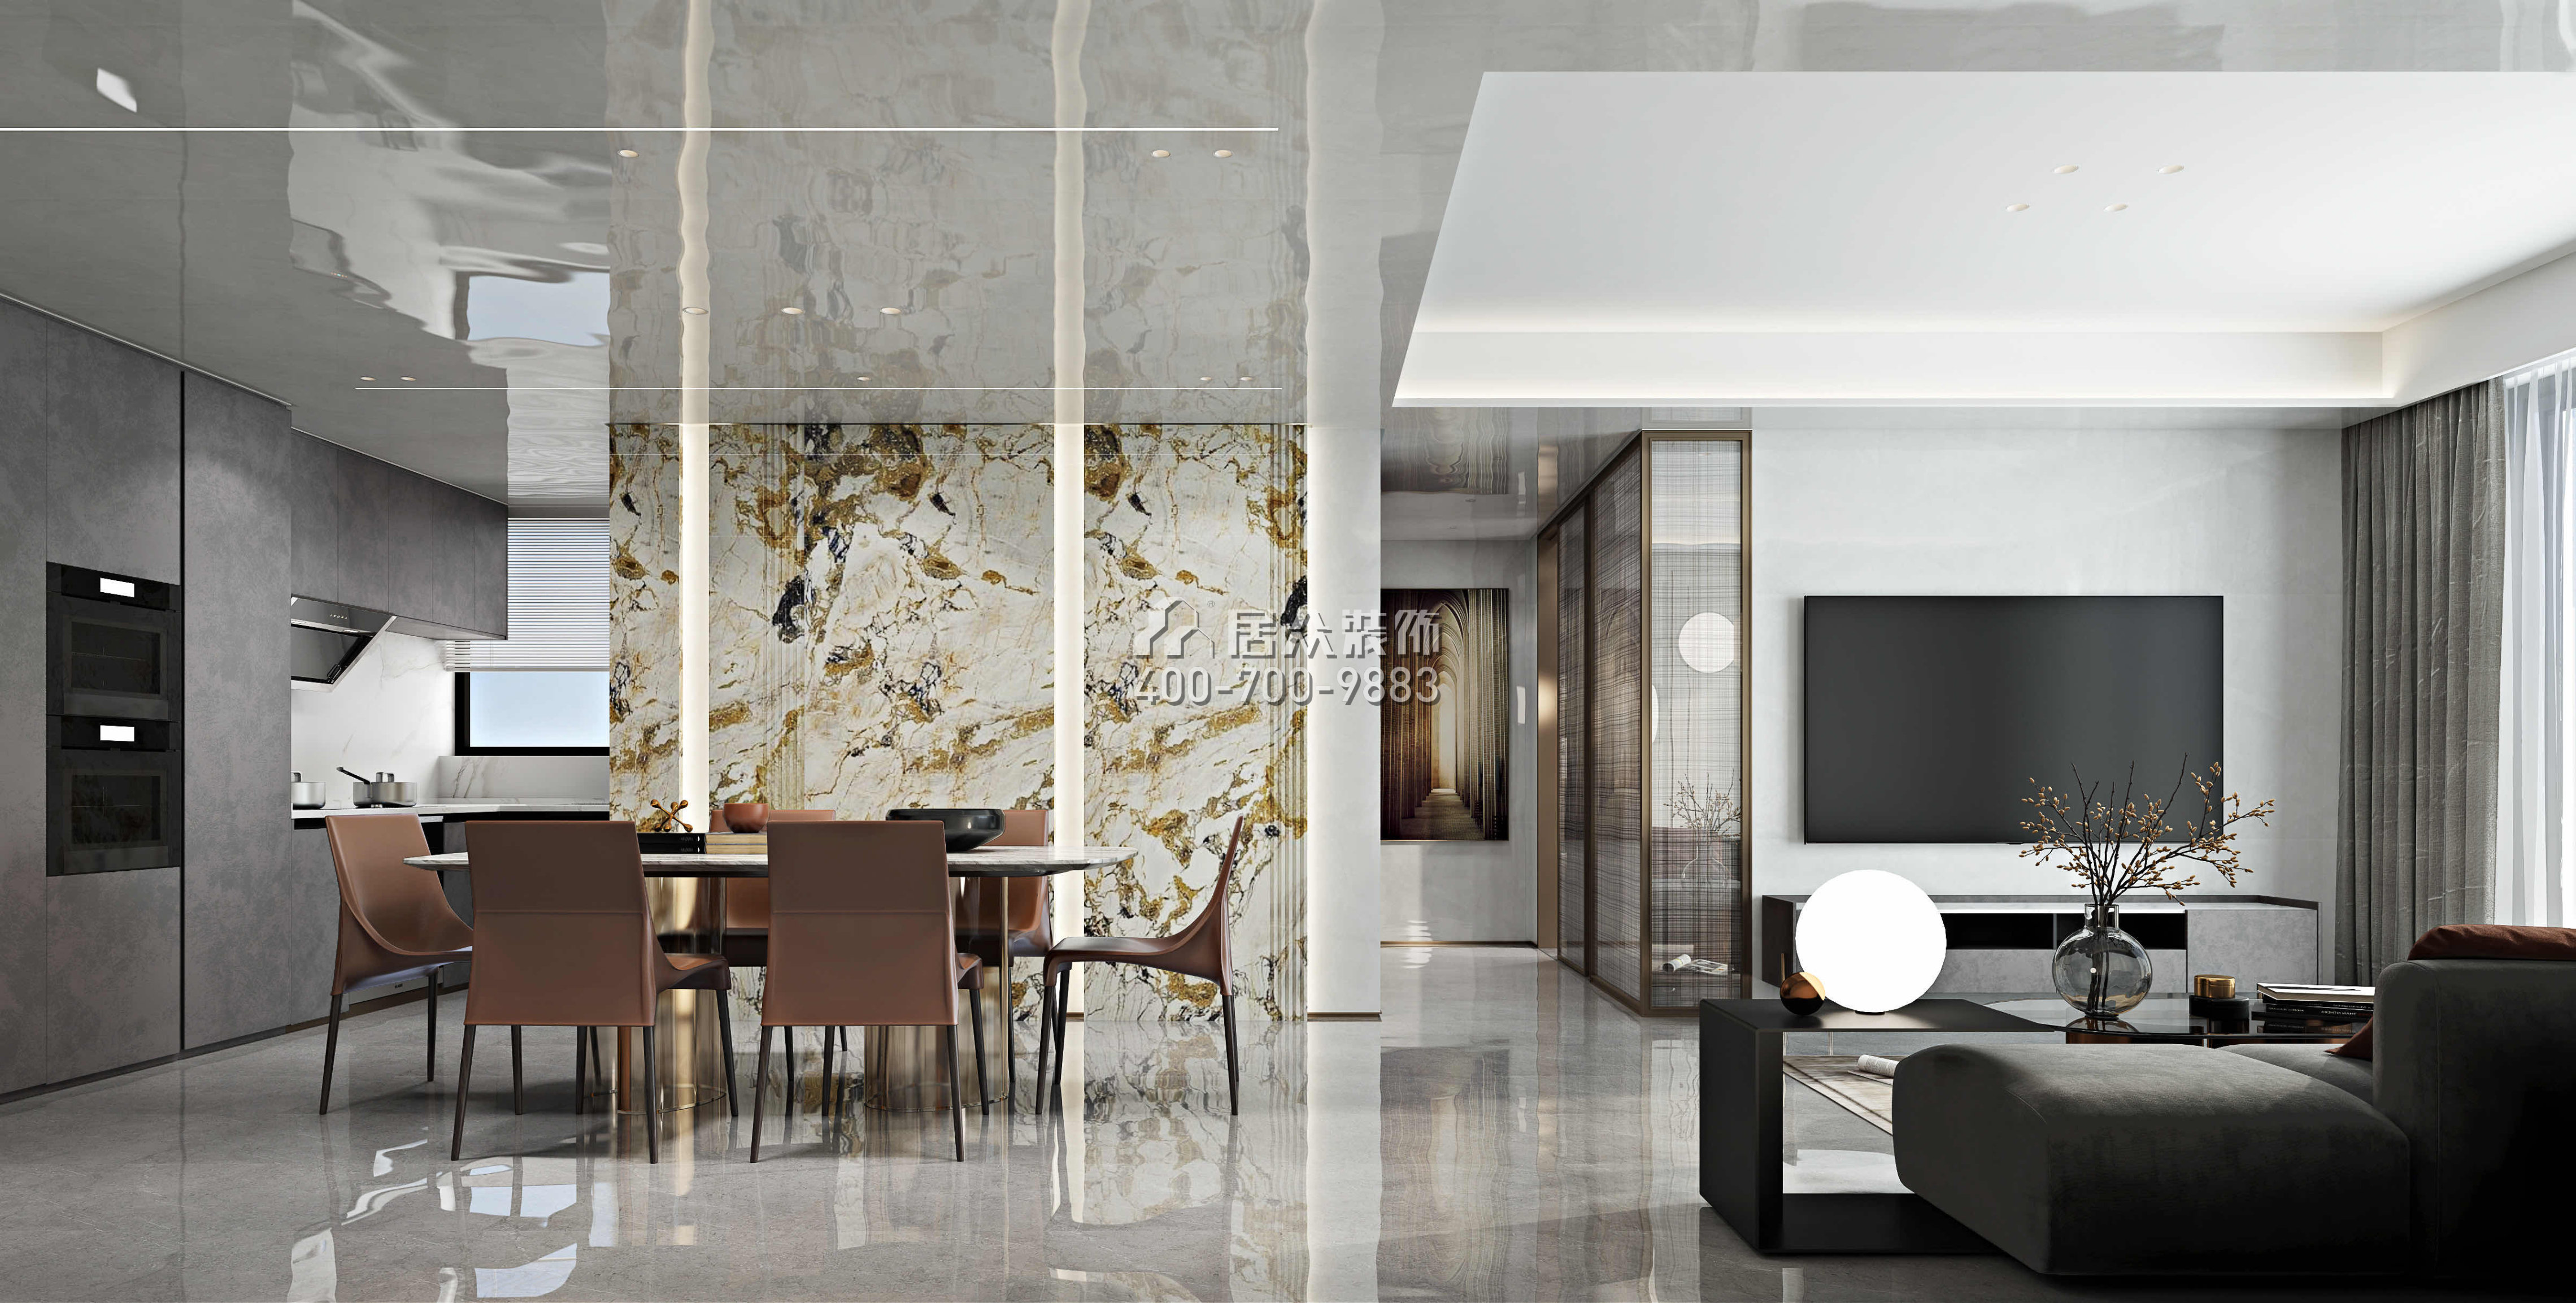 淘金山二期89平方米现代简约风格平层户型餐厅装修效果图